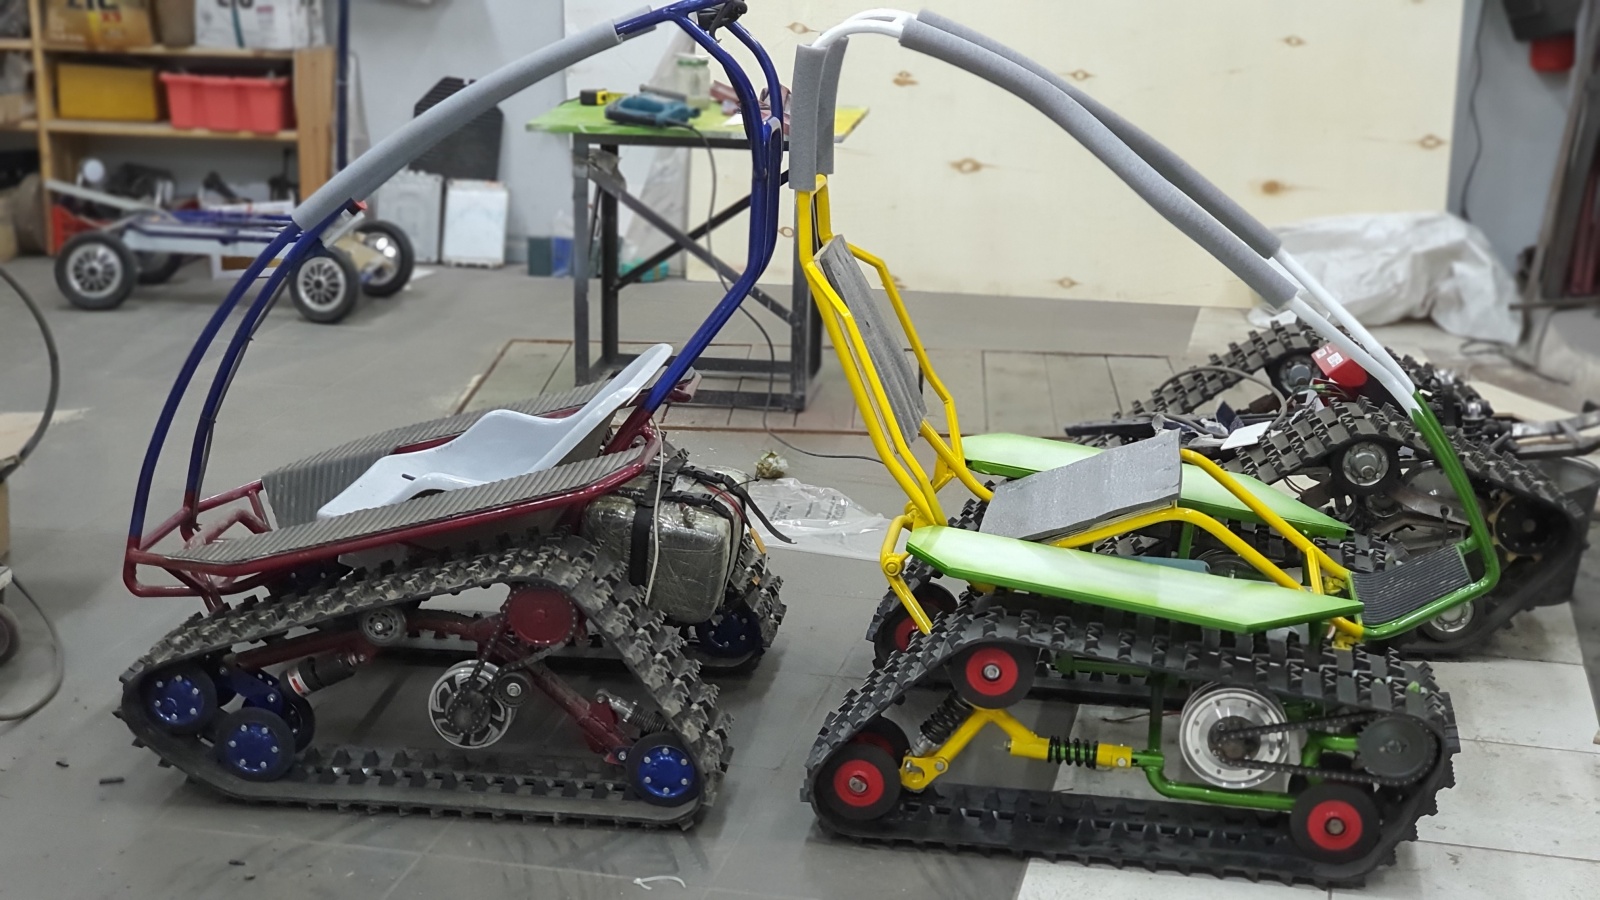 DIY Гусеничная платформа для роботов и развлечений - 3